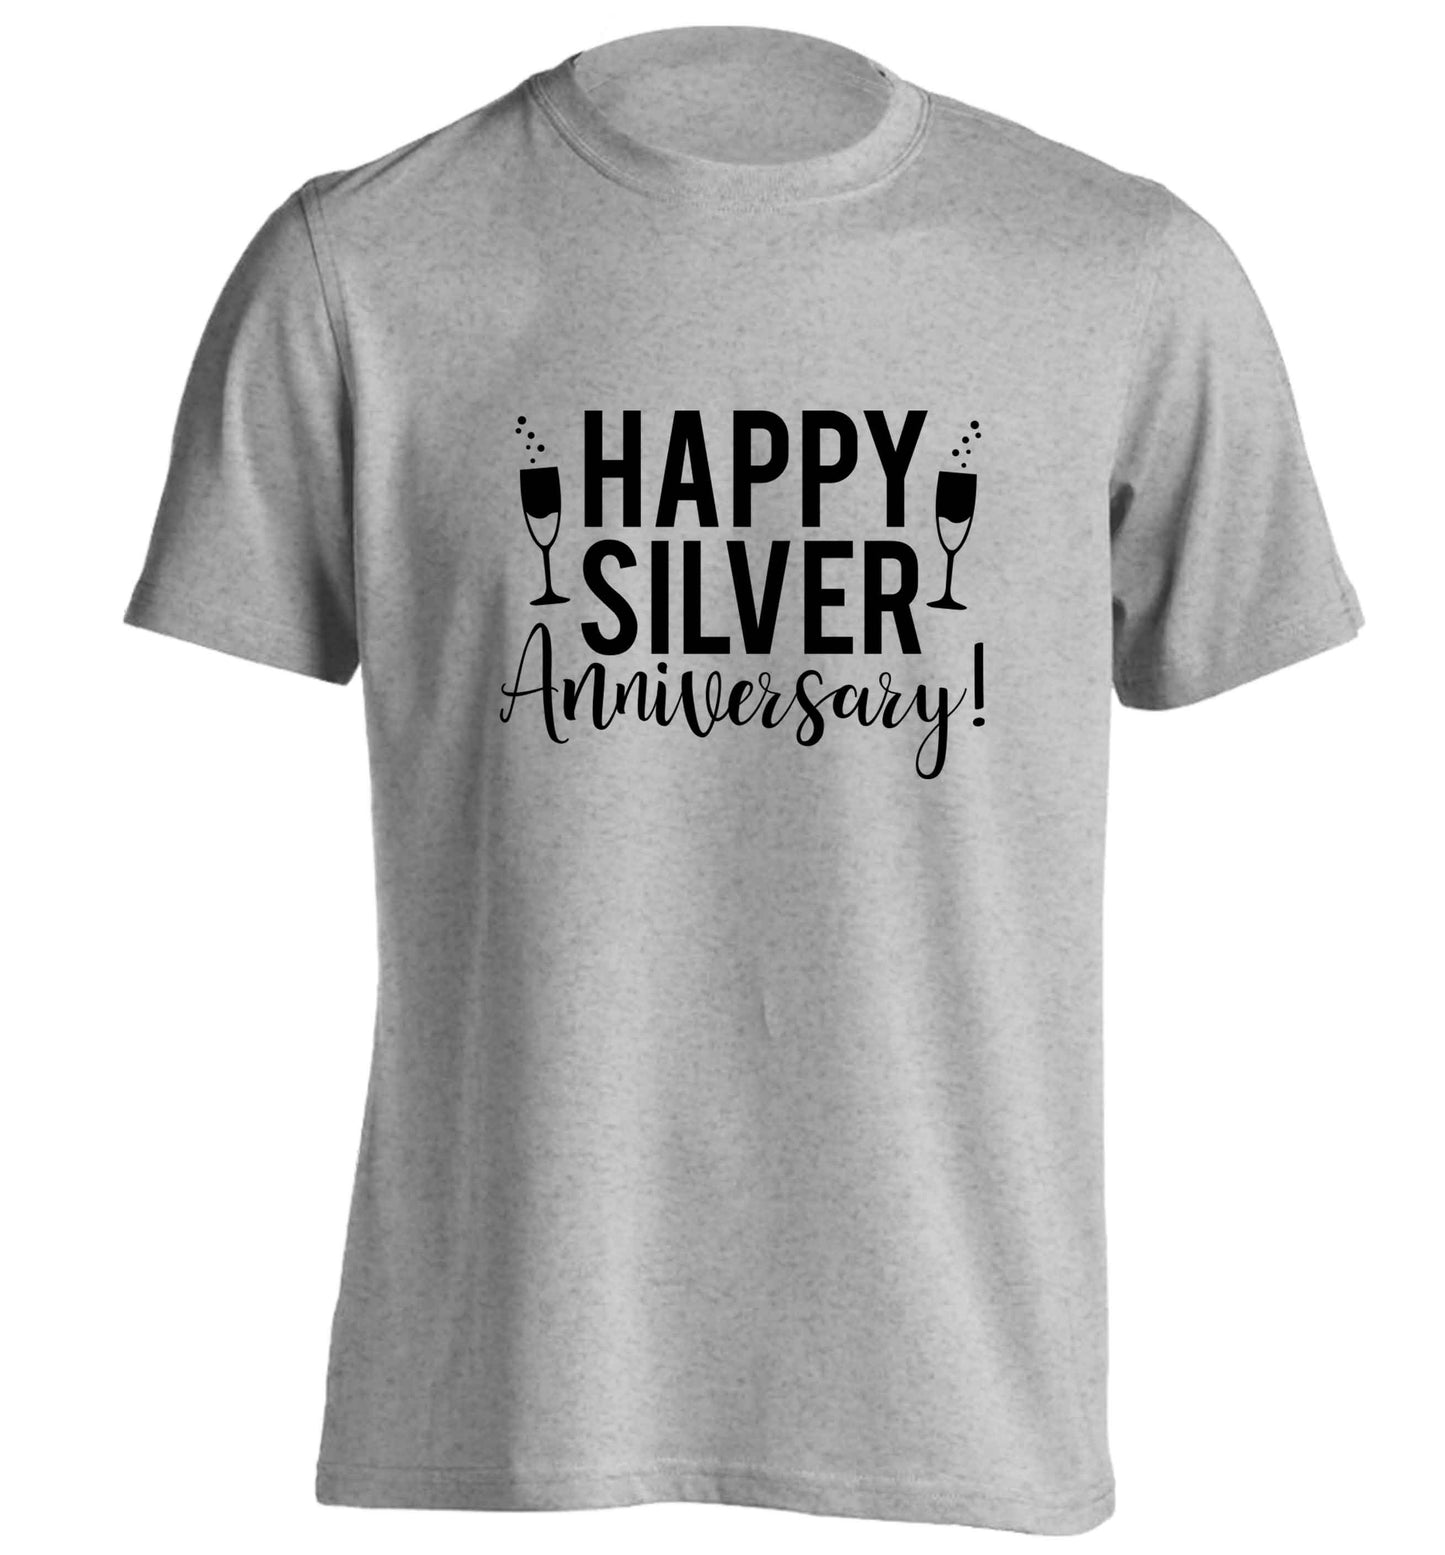 Happy silver anniversary! adults unisex grey Tshirt 2XL